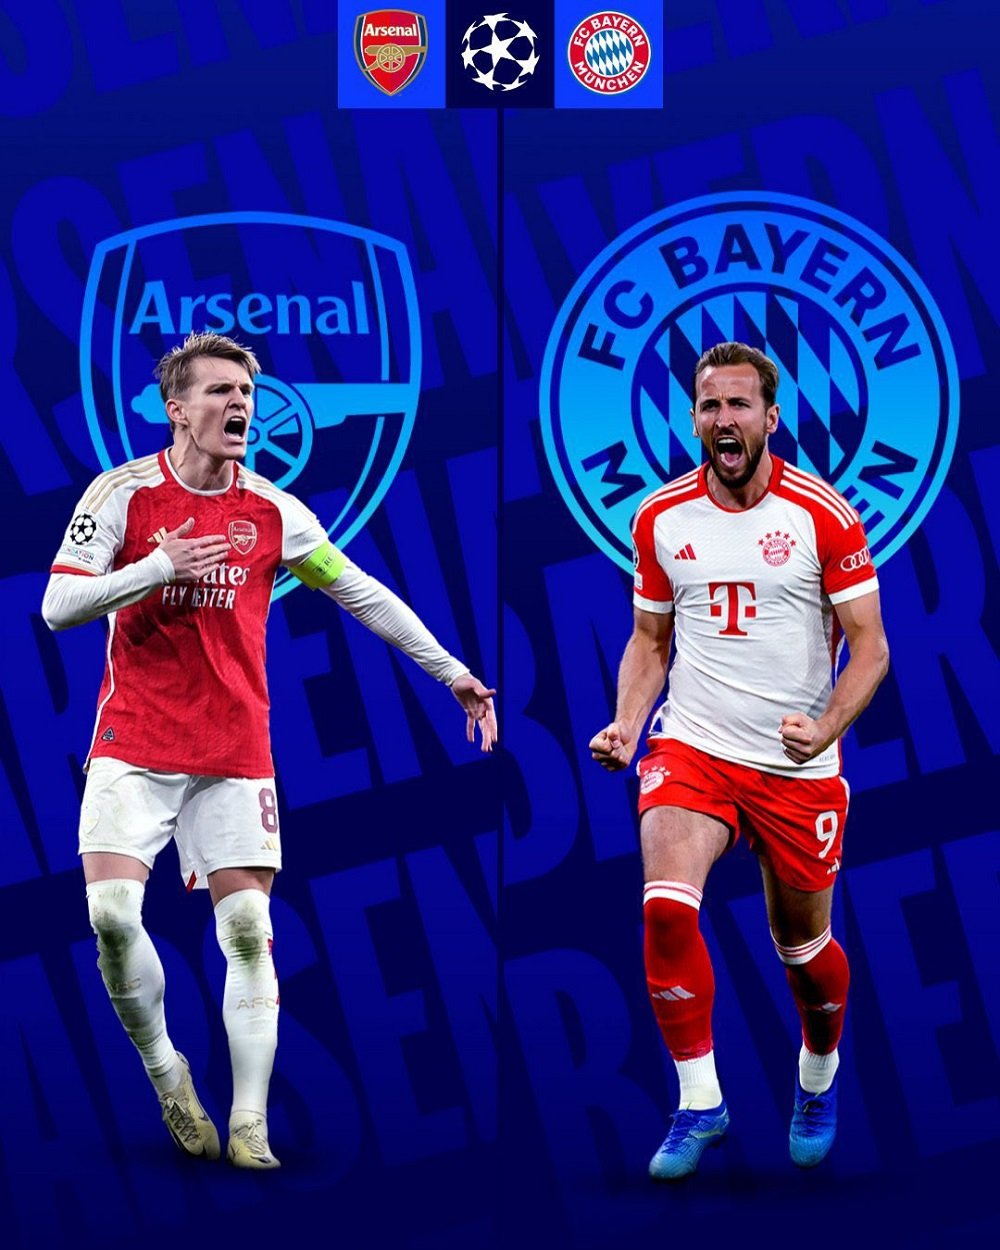 Arsenal izahura na Bayern Munich